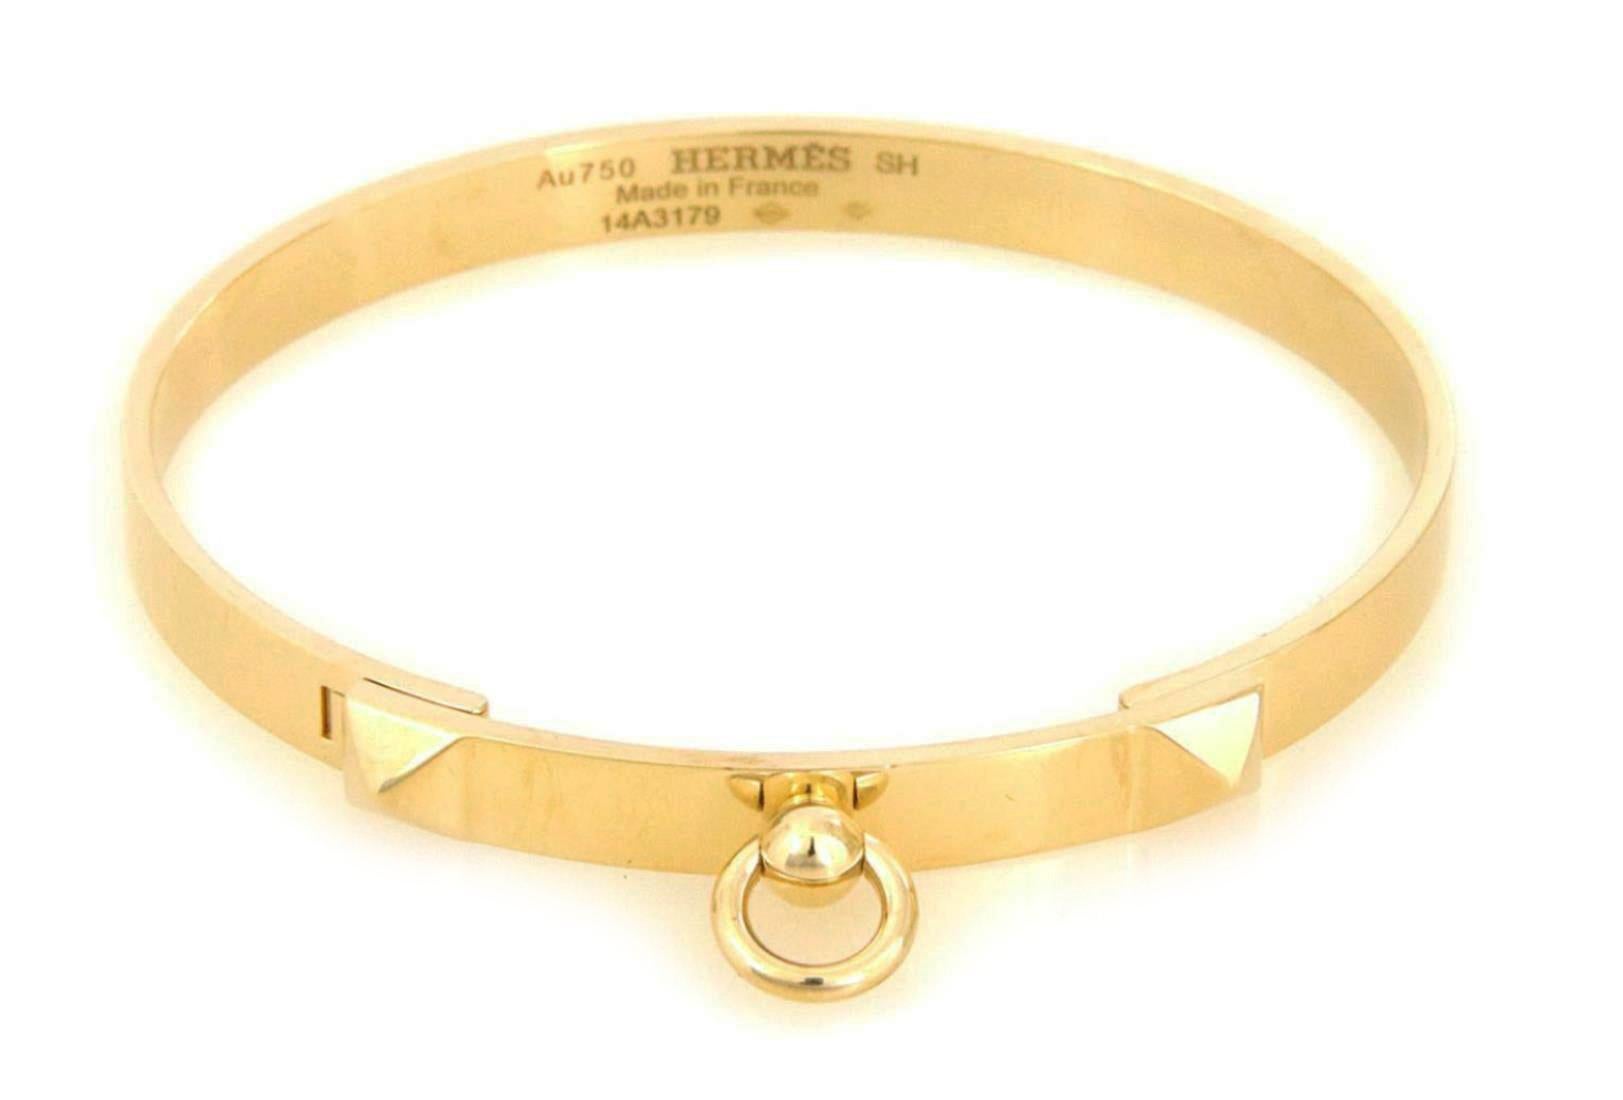 Chic et authentique par Hermes de la Collection Collier de Chien. Cet élégant bracelet est fabriqué en or jaune 18 carats et présente une longue barre de 6 mm de large sur le devant, décorée d'une forme pyramidale à chaque extrémité de la barre. Le